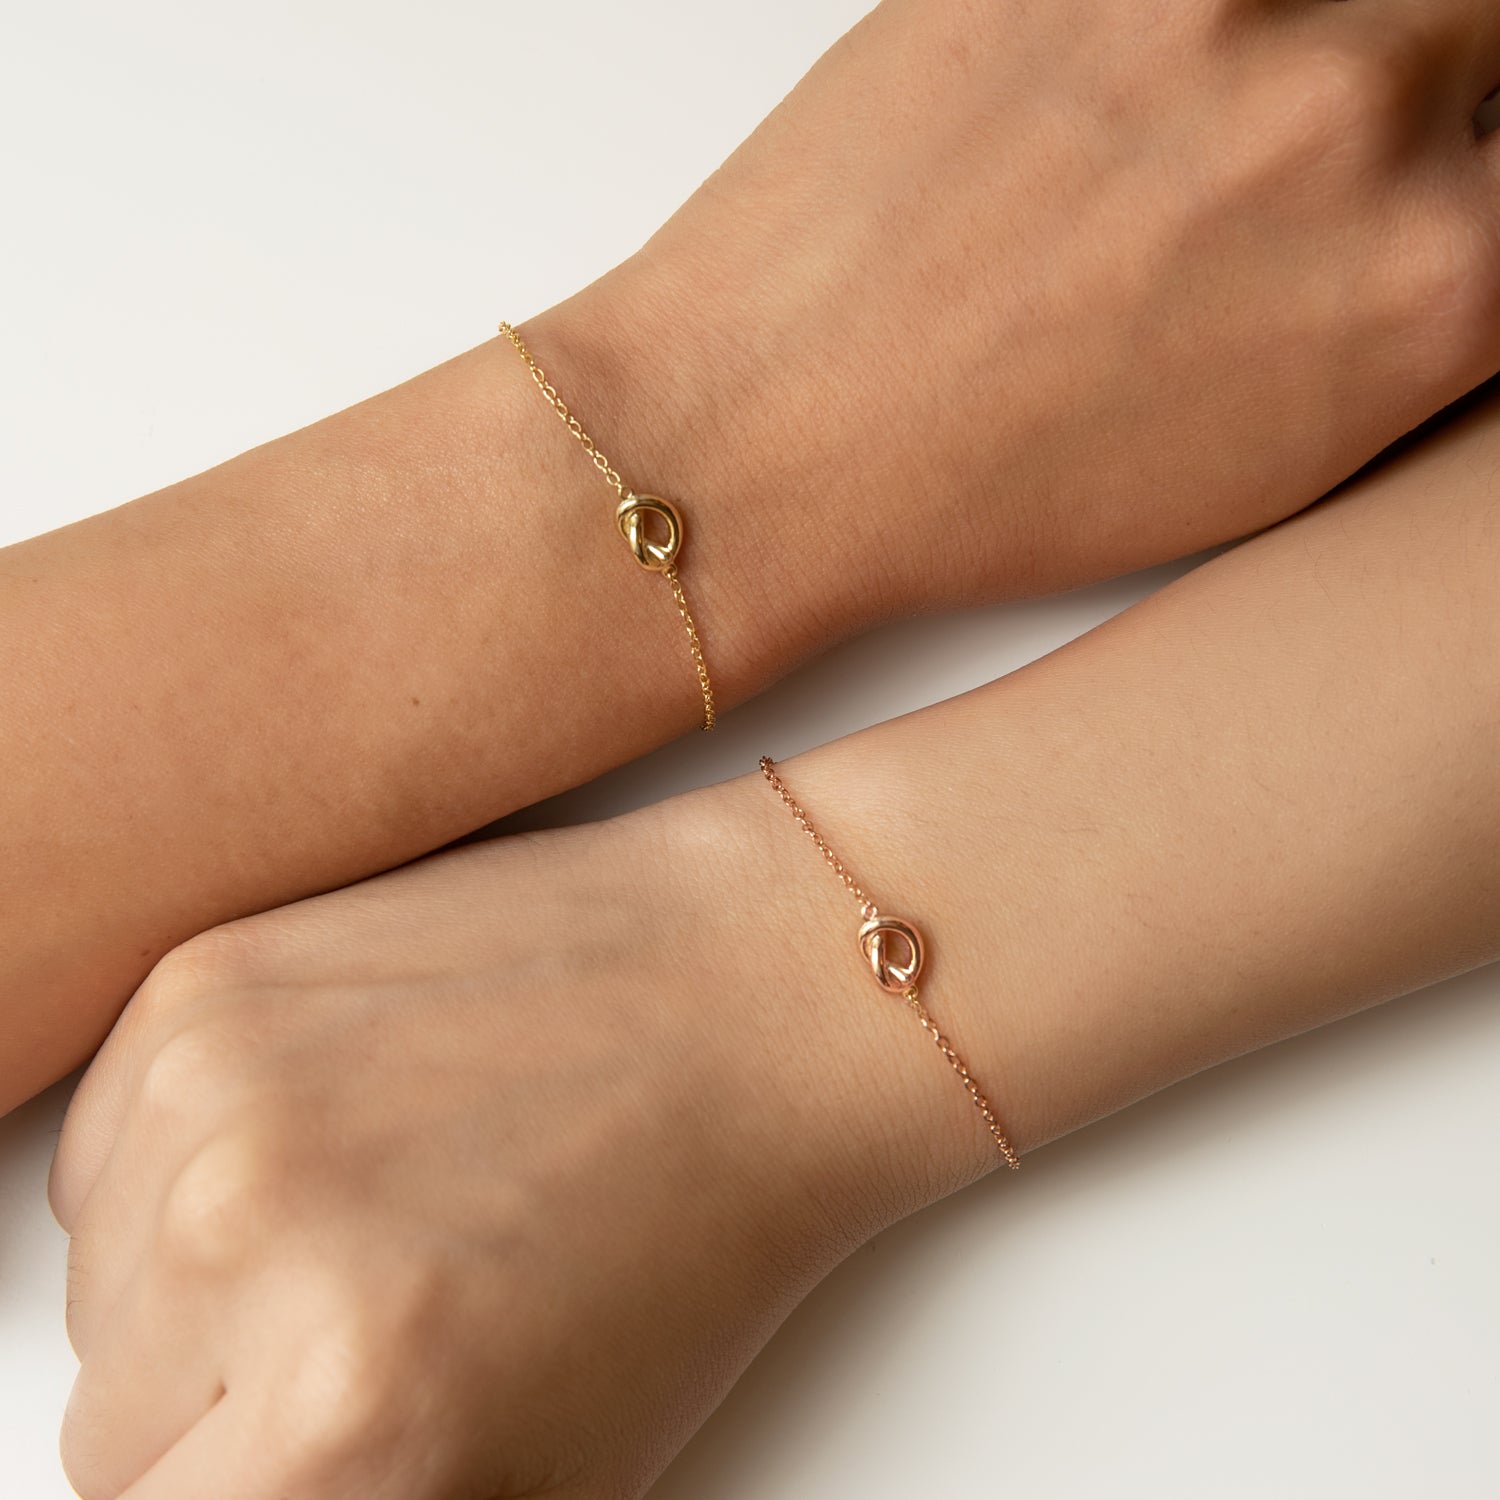 Love Knot Bracelet, Friendship Bracelet, Best Friend Gift – AMYO Jewelry